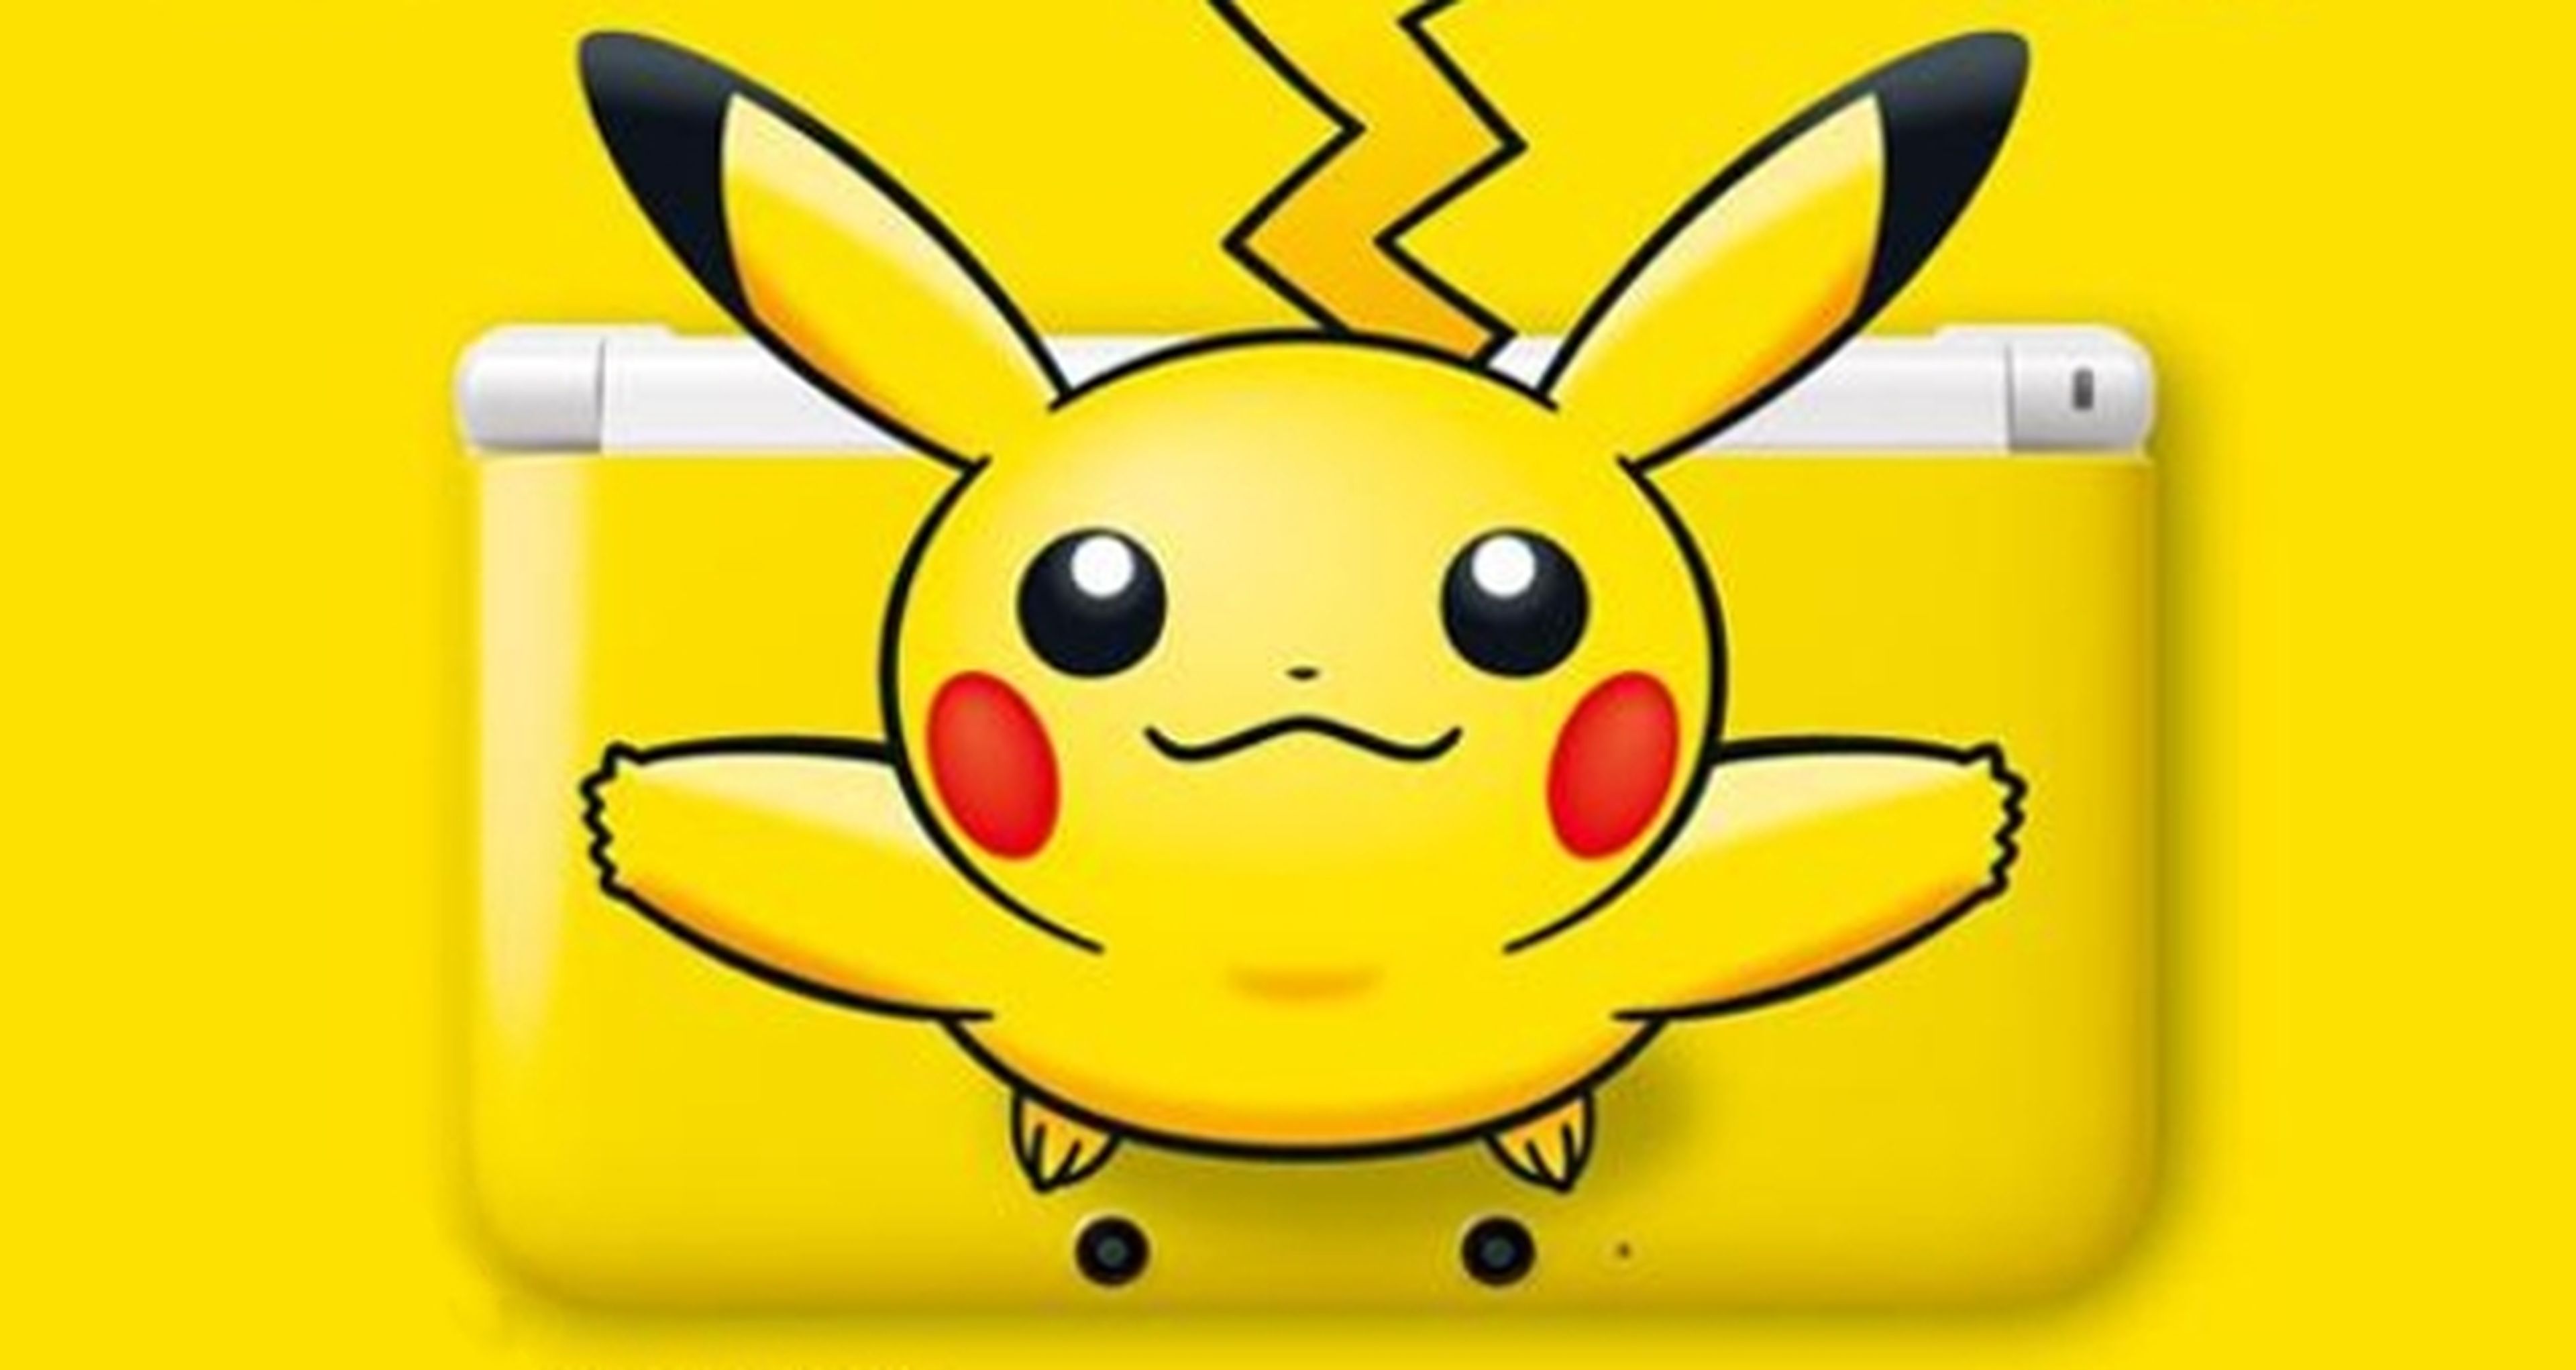 Nintendo y su 3DS XL Edición Pikachu